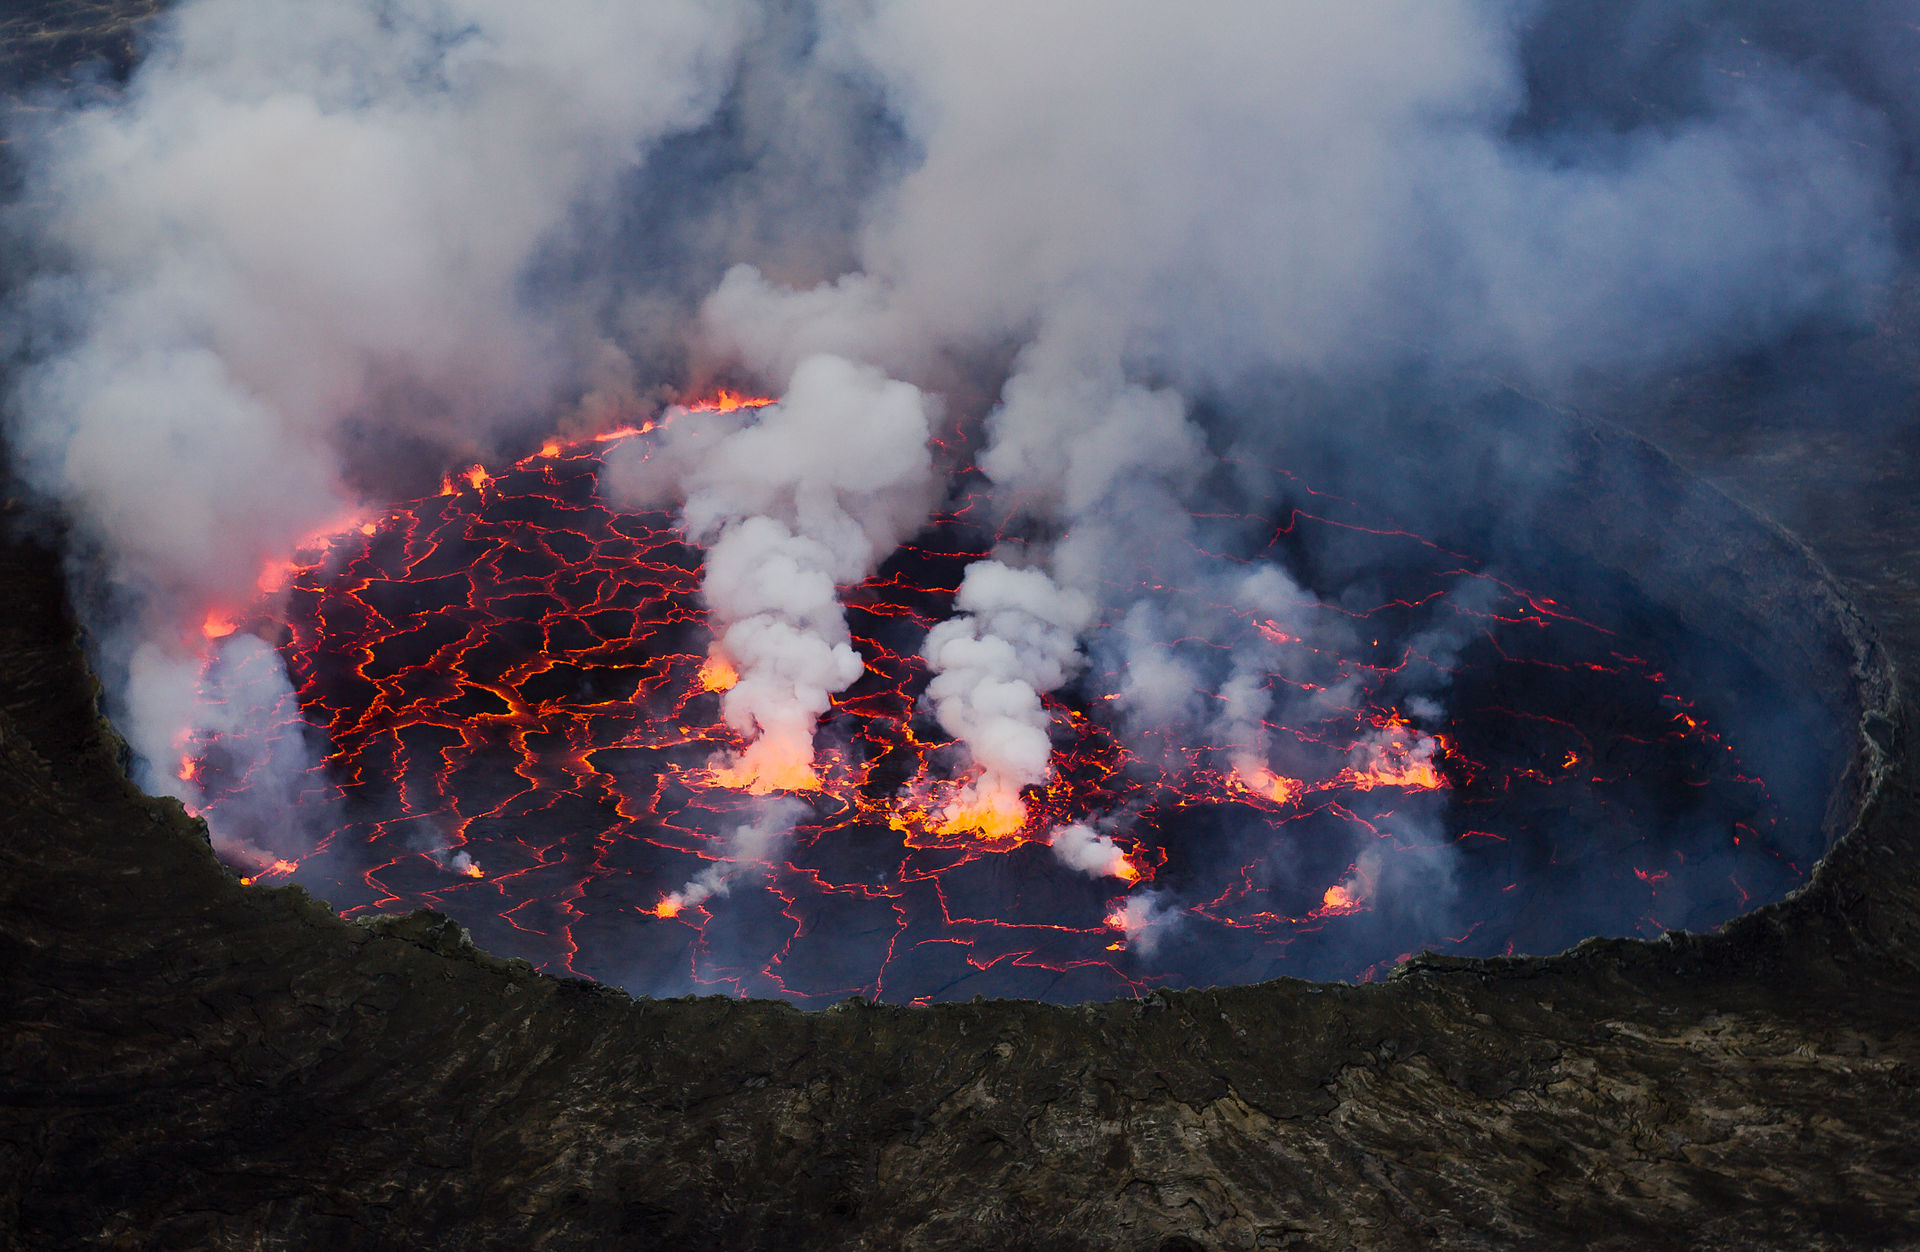 Verdensarven Virunga nasjonalpark i Kongo har hele syv vulkaner to av disse er de mest aktive i Afrika. Vulkanen Nyiragongo har en flytende alkalisk lavasjø som fyller opp krateret med periodiske utbrudd som får katastrofale konsekvenser for omgivelsene. Foto: Cai Tjeenk Willink (CC BY-SA.3.0) via Wikimedia commons